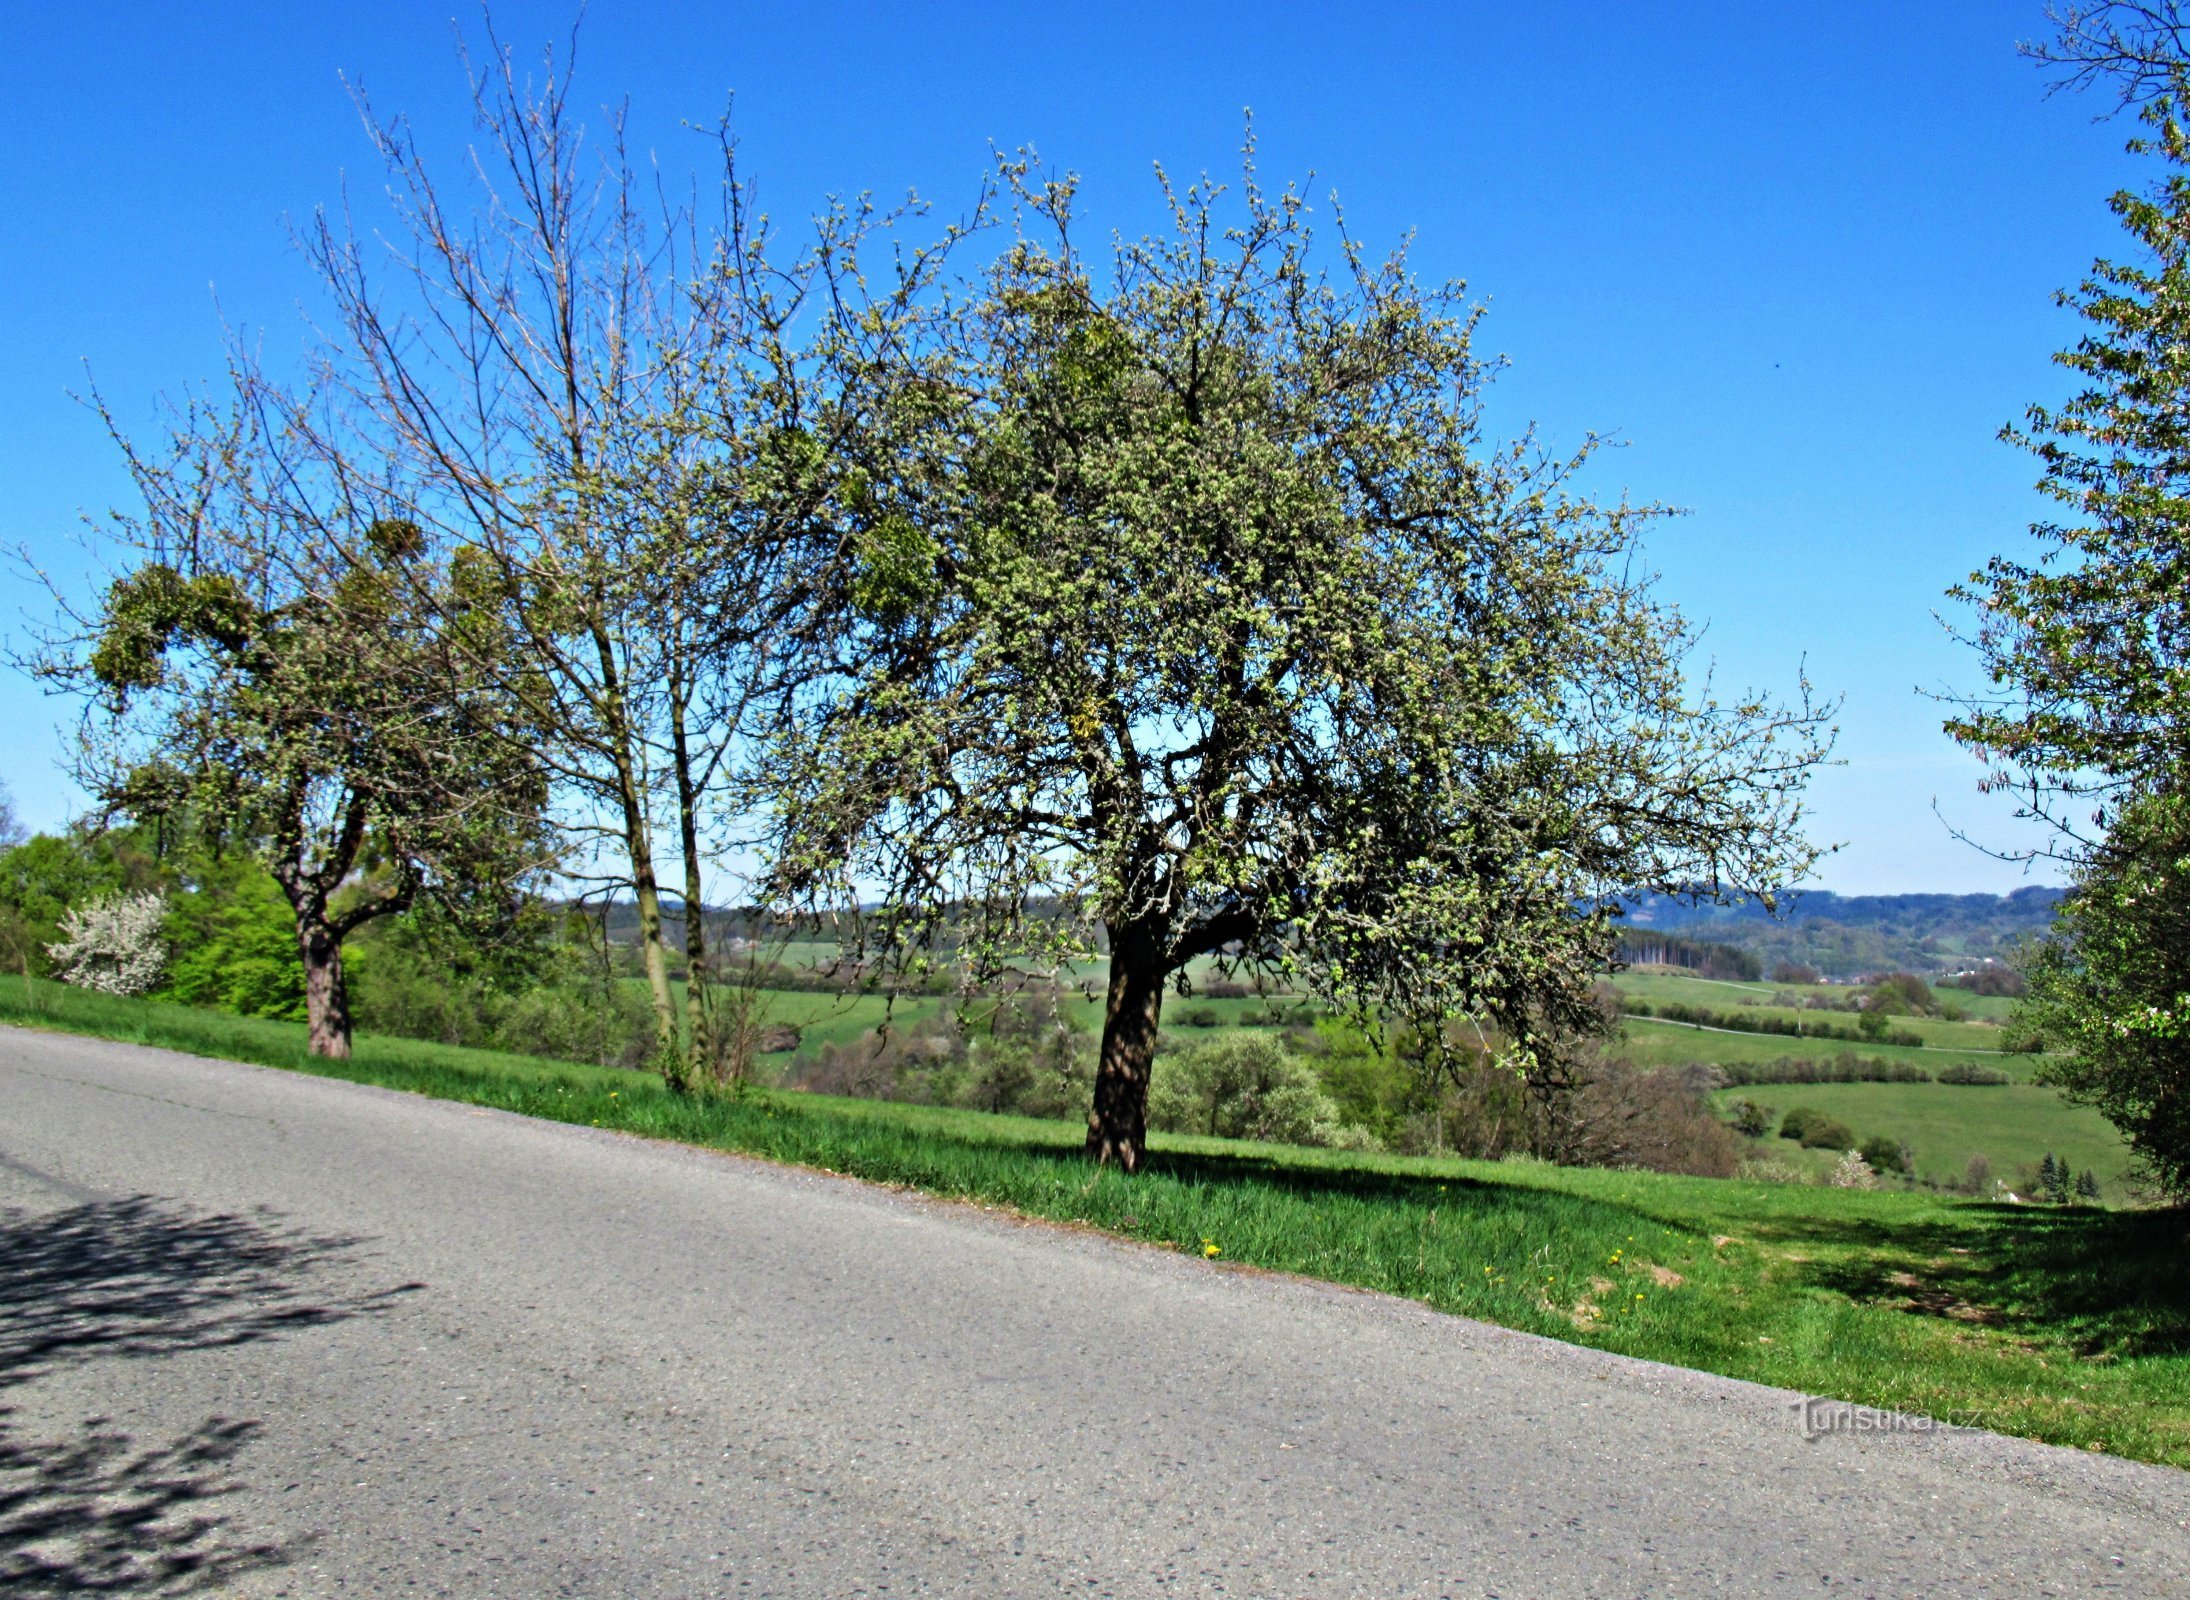 Kevätkävely Vizovicesta Rakovan ja Zádveřicen kautta